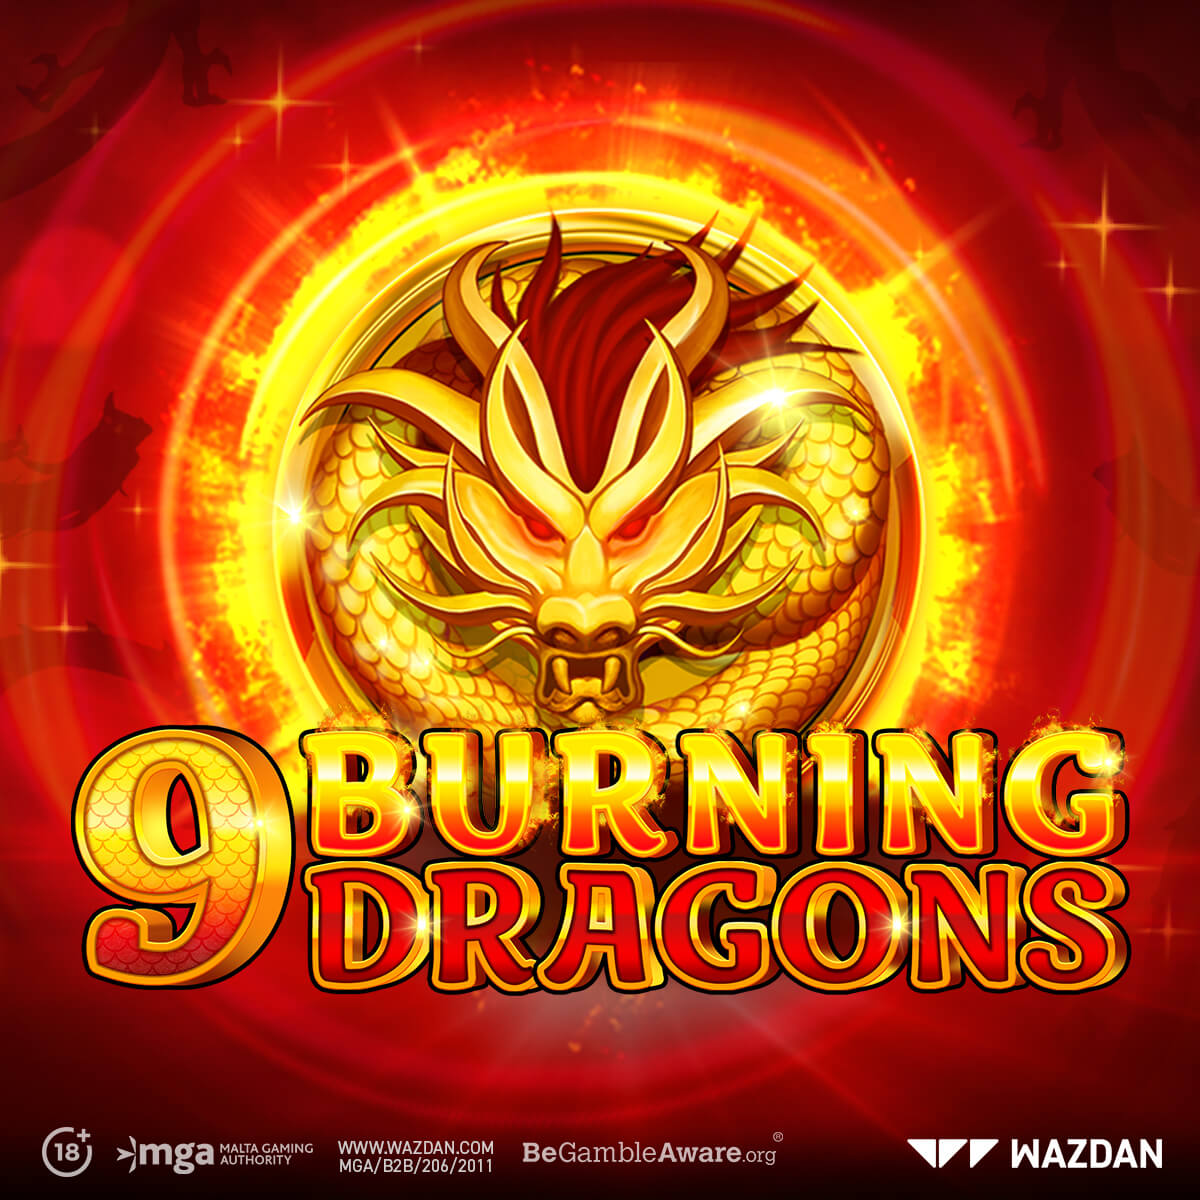 9 burning dragons slot